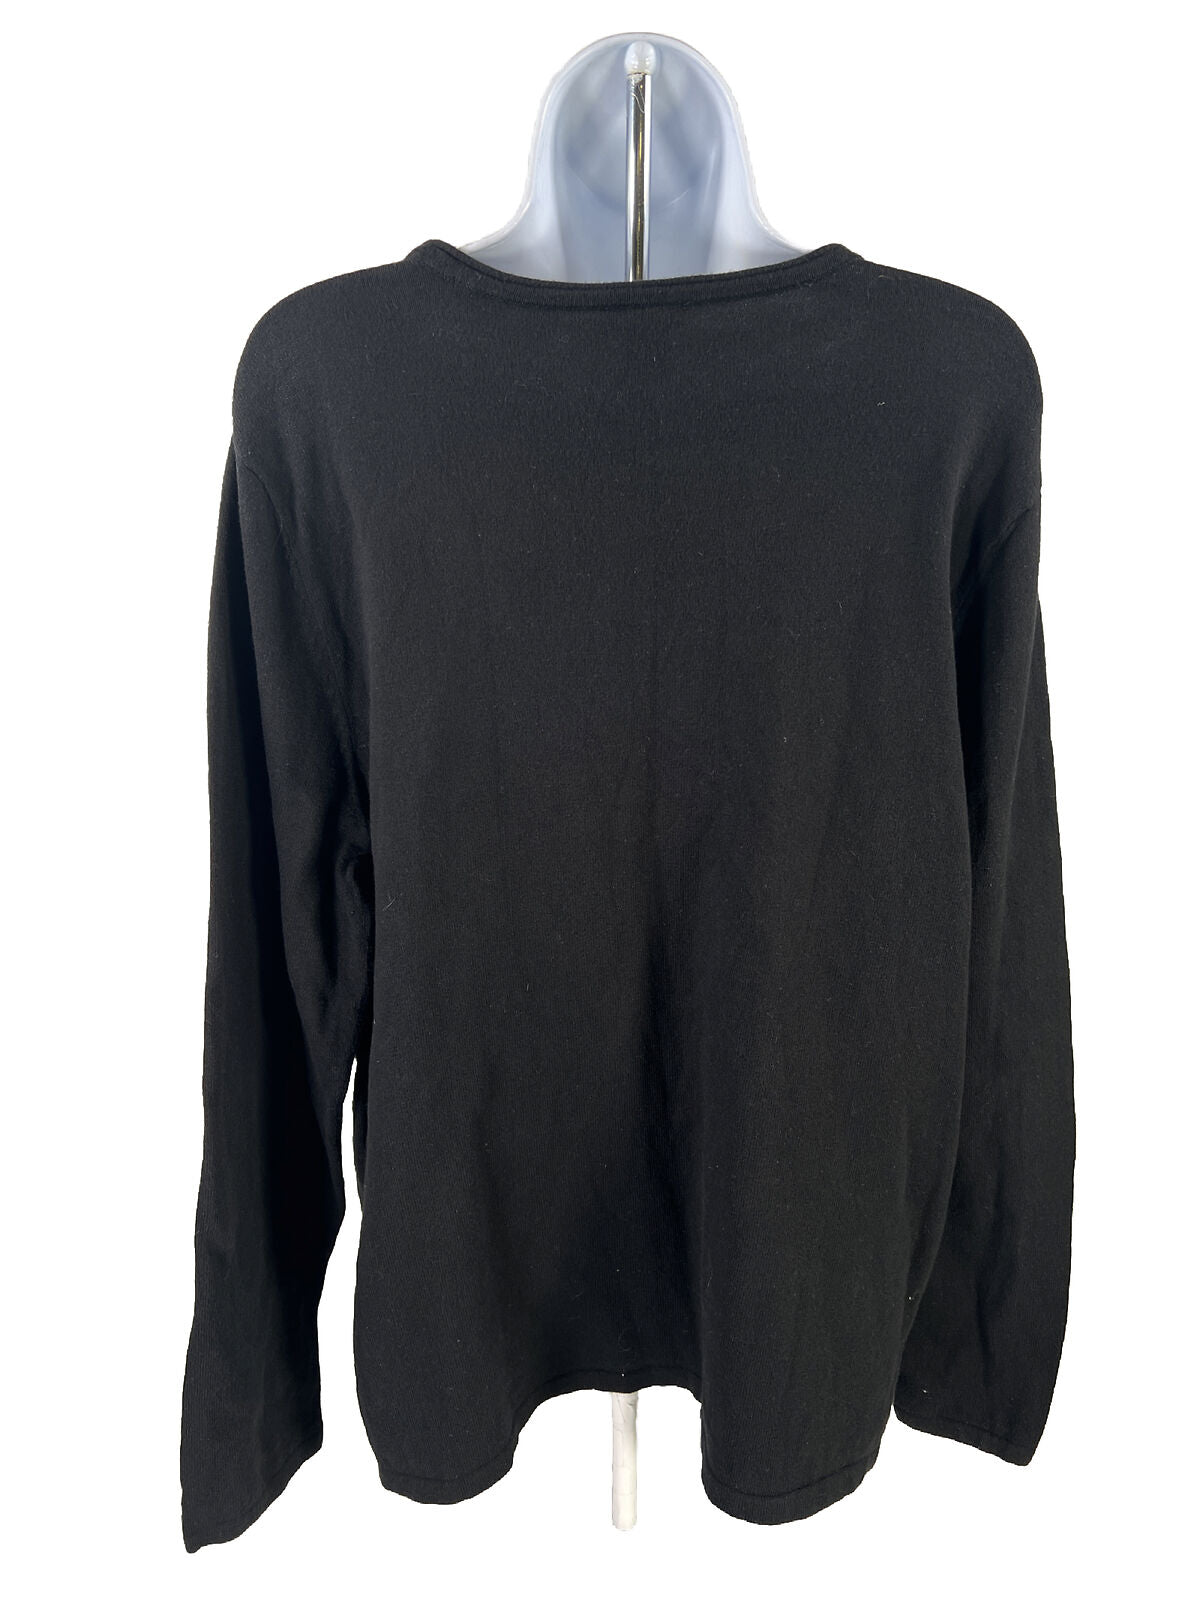 J. Jill Women's Black Snap Side Long Sleeve Sweater - XL